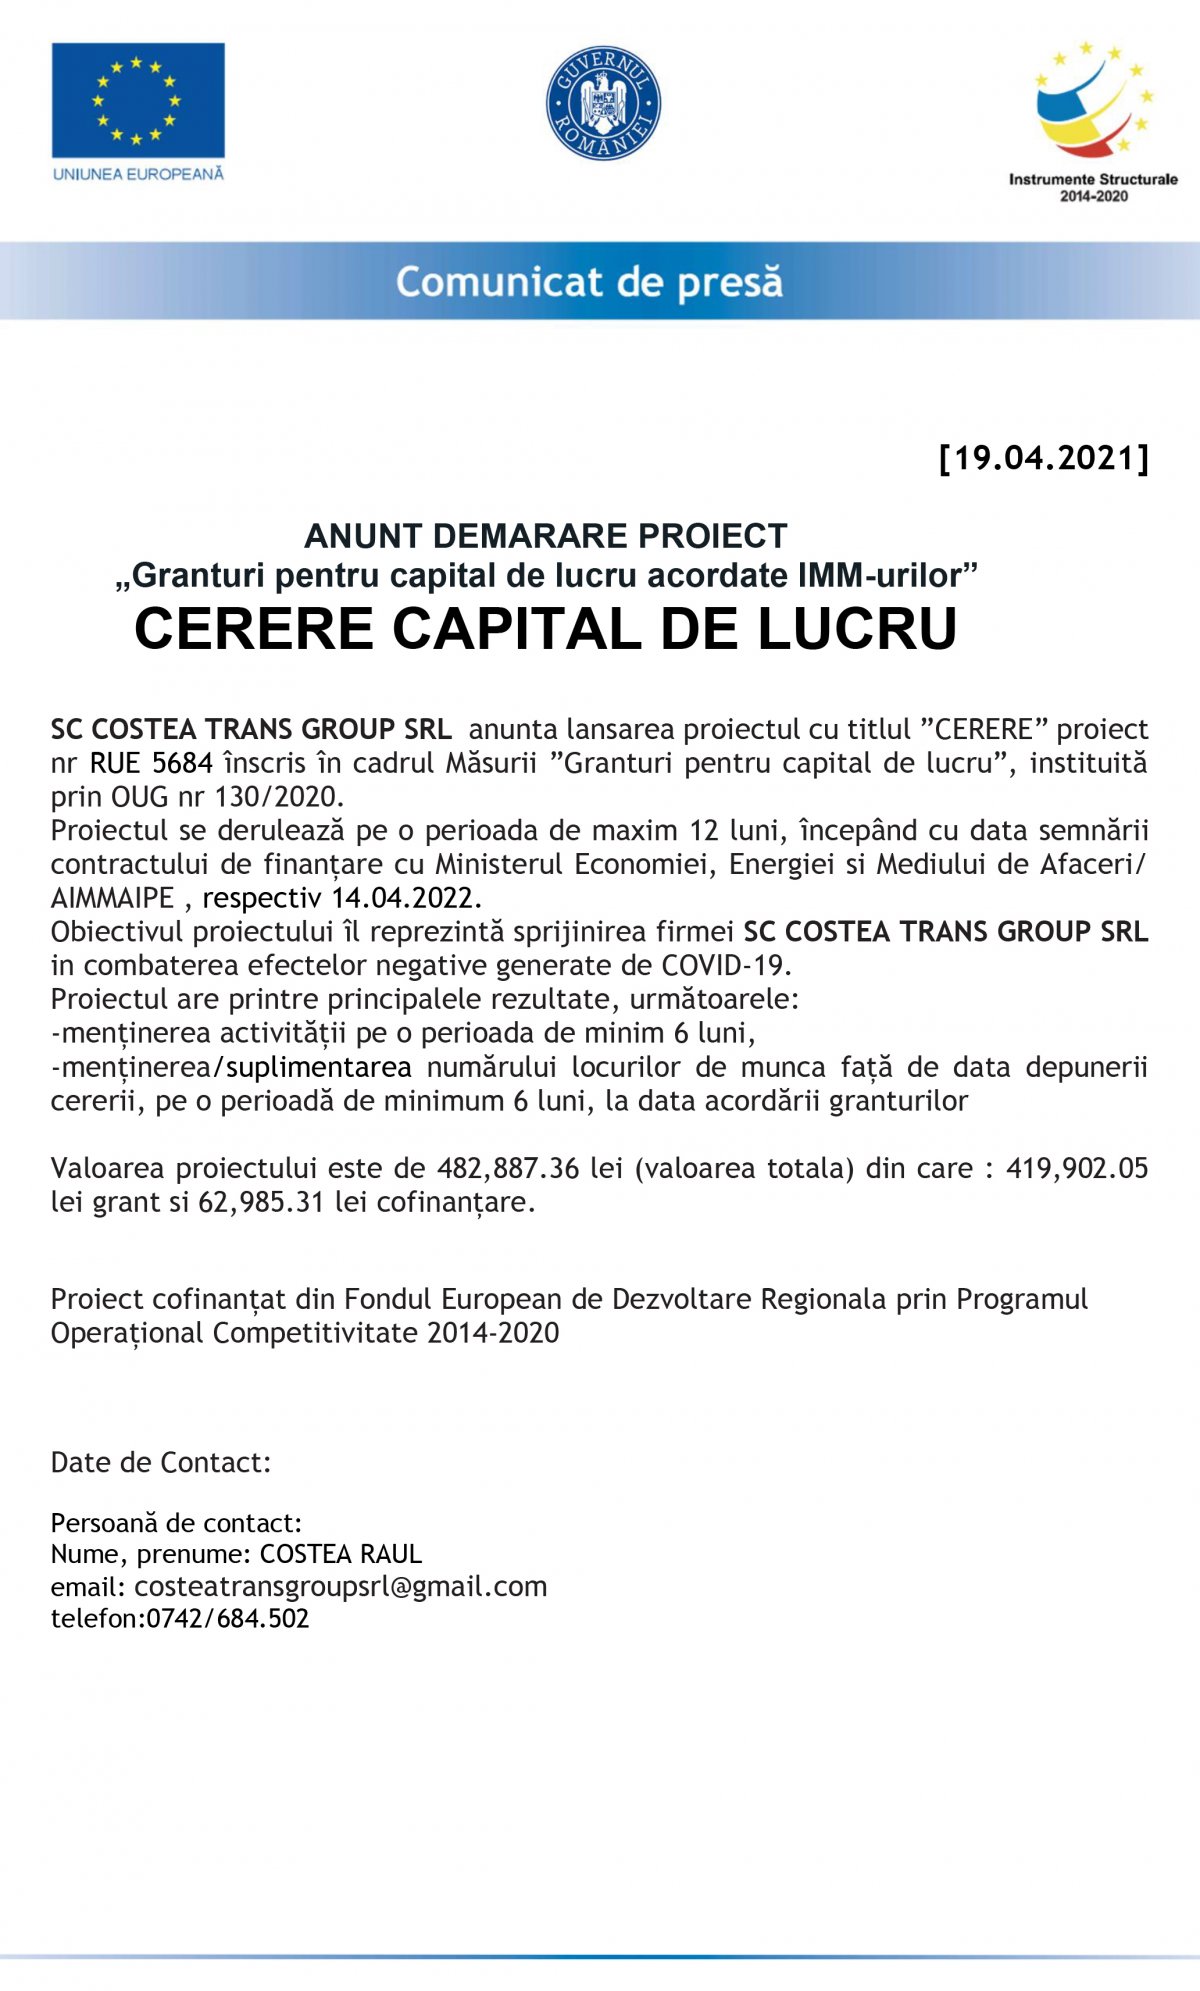 ANUNT DEMARARE PROIECT „Granturi pentru capital de lucru acordate IMM-urilor” CERERE CAPITAL DE LUCRU